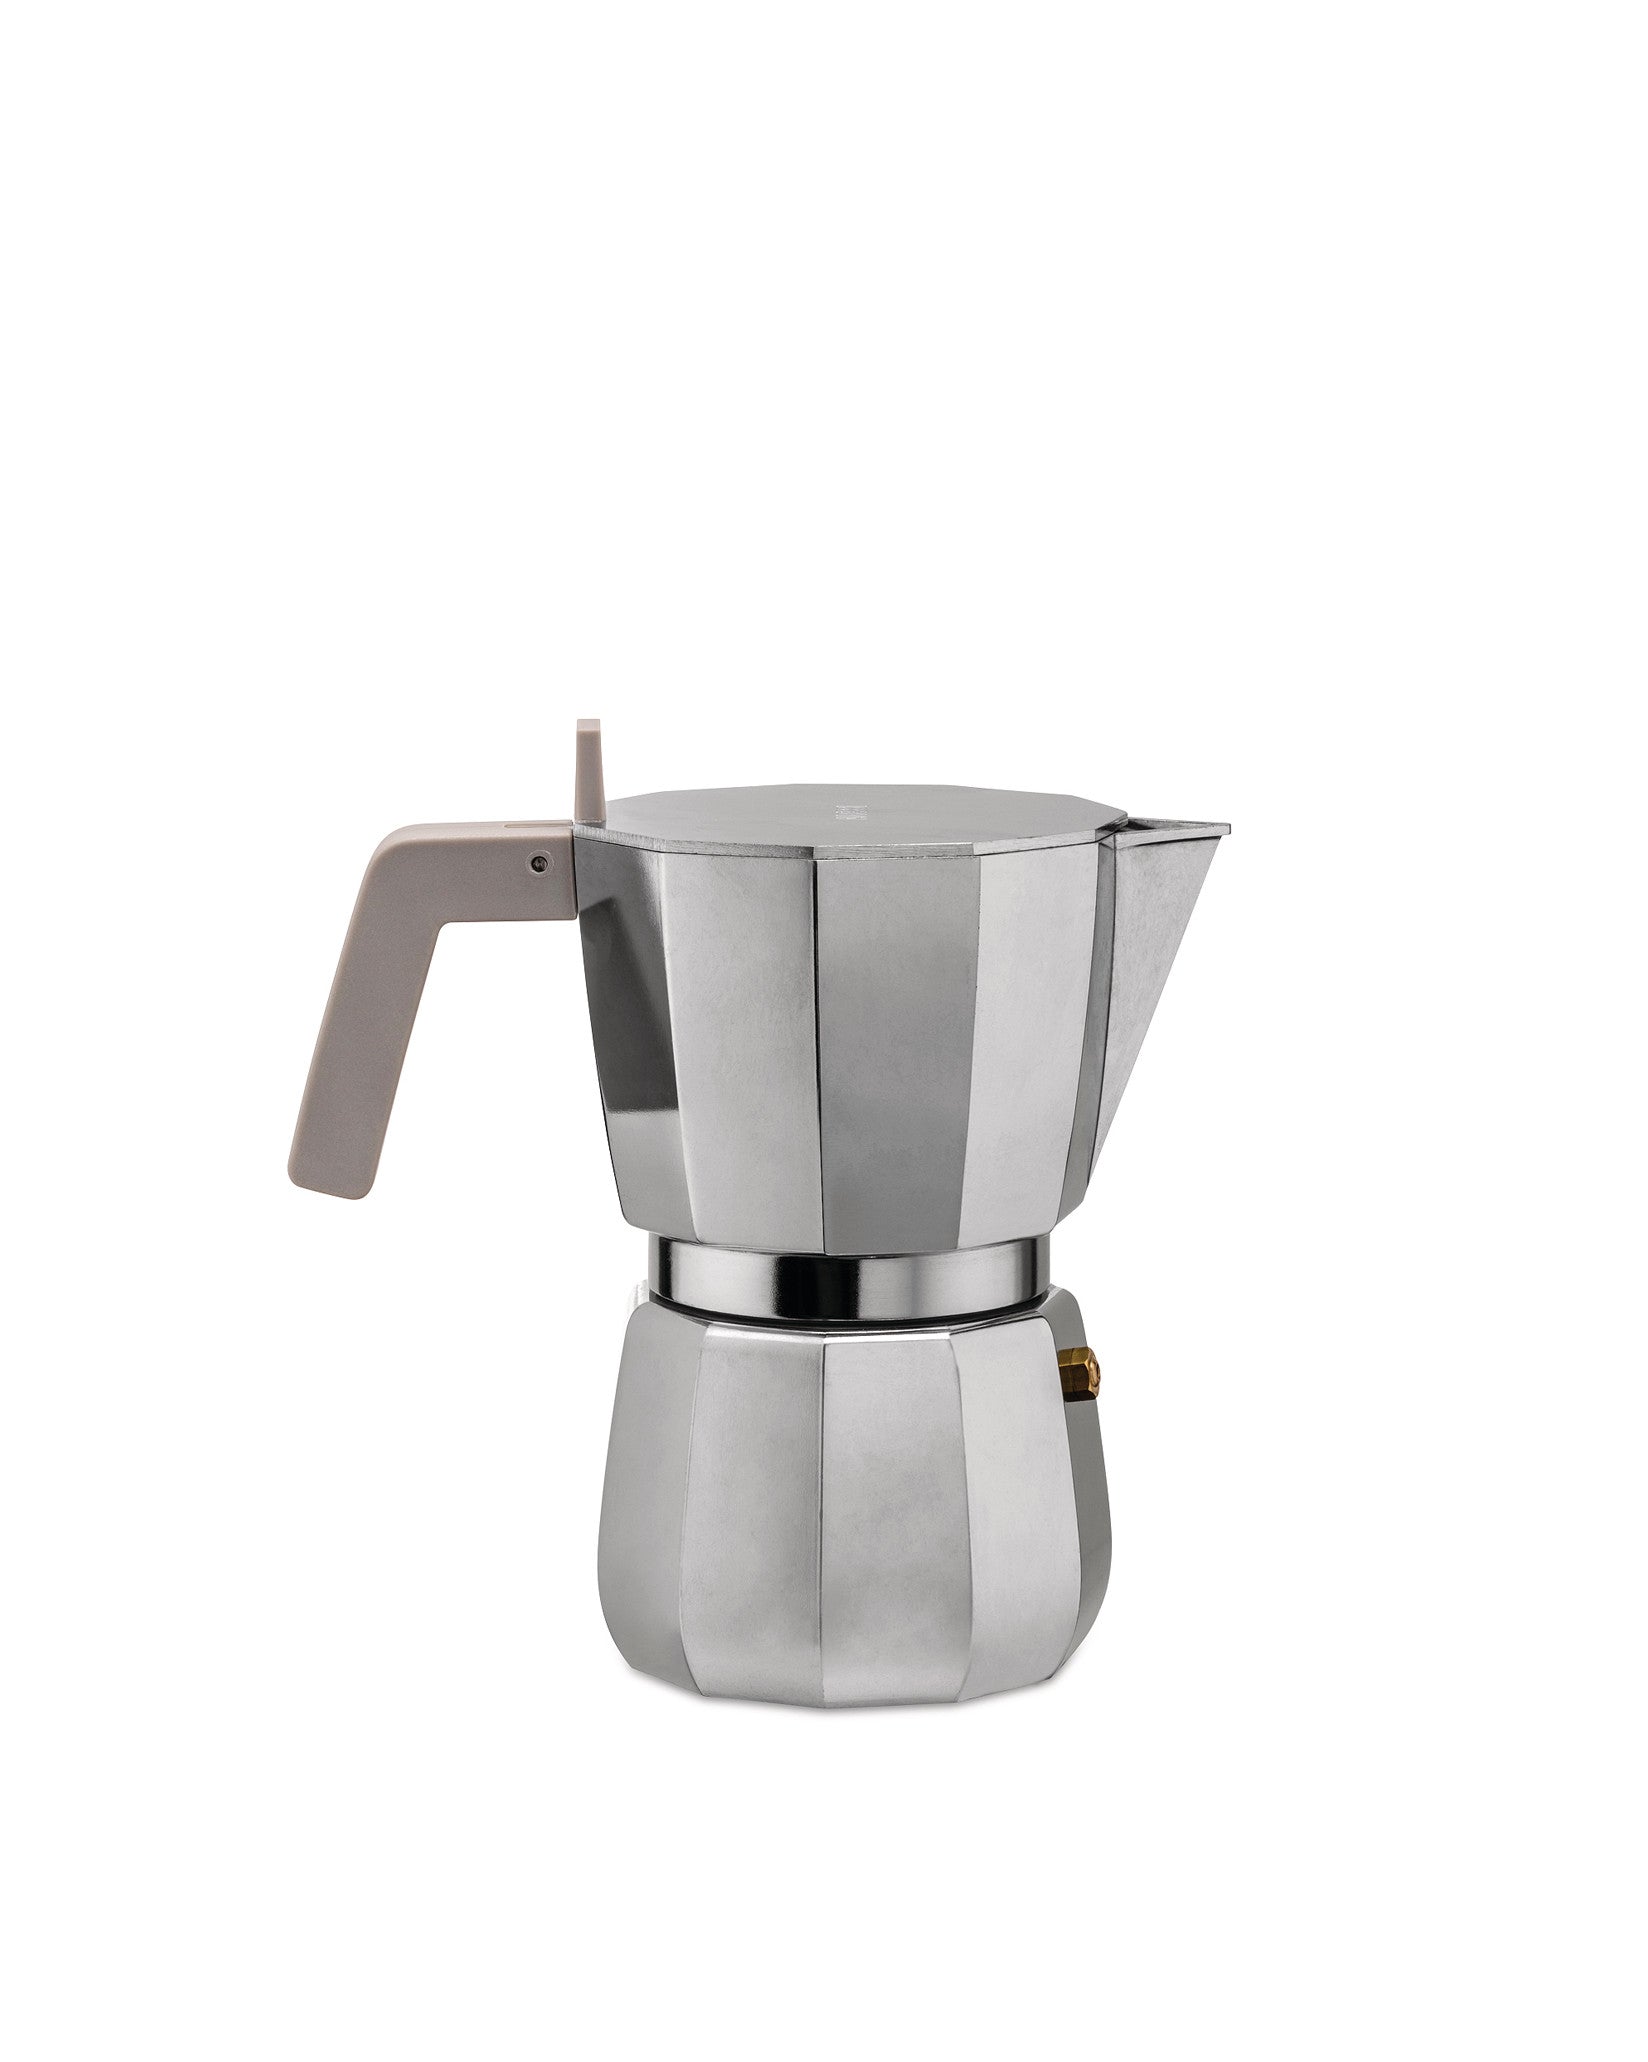 Alessi - Moka Espresso Coffee Maker 1 Cup